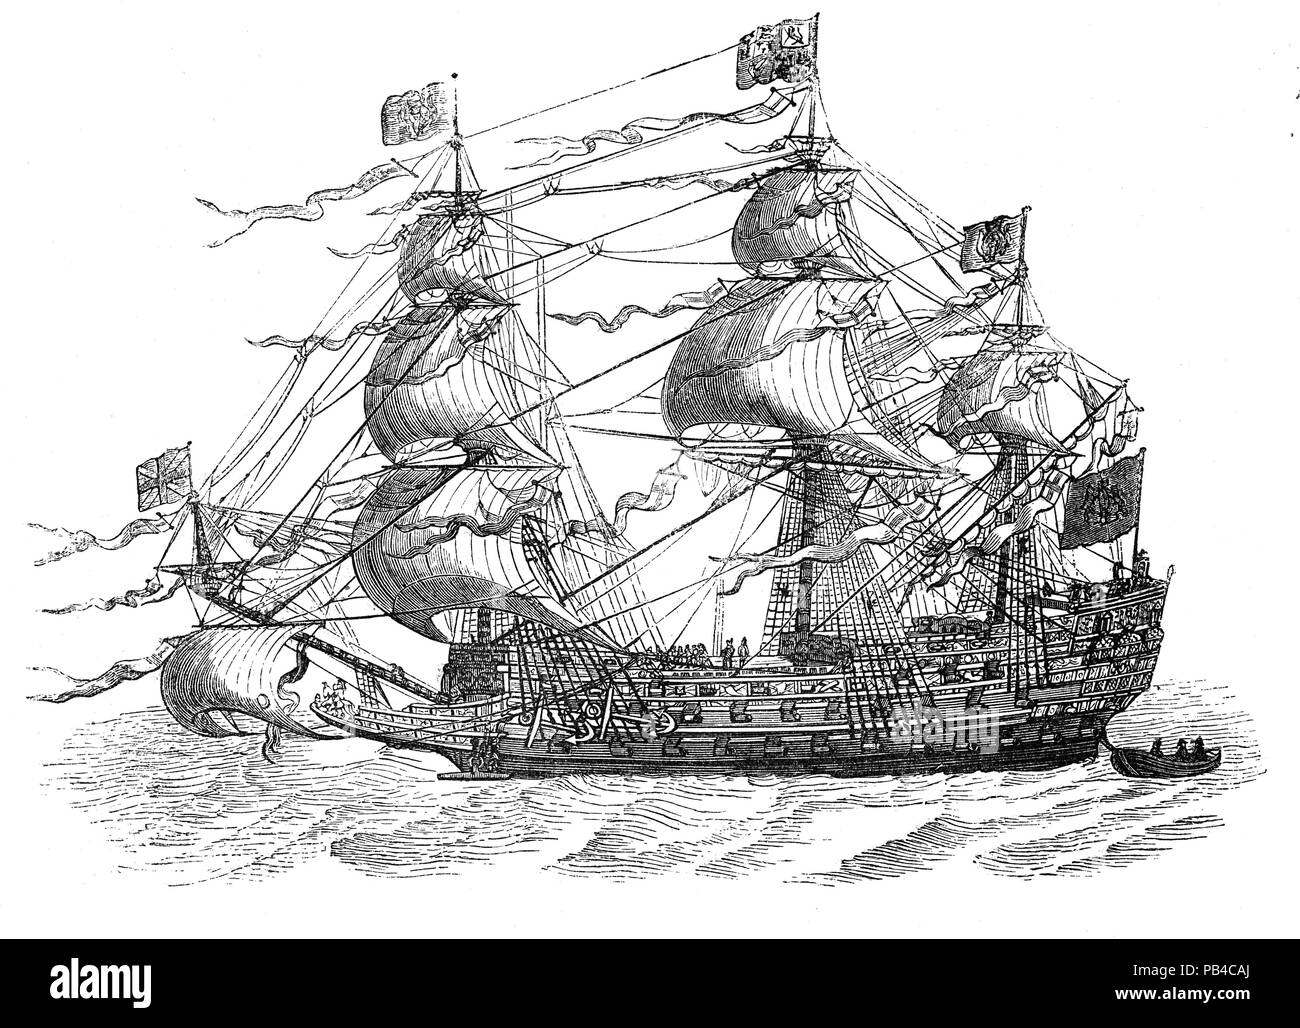 Herrscher der Meere: galeonen waren groß, multi-decked Segelschiffe zuerst durch die Spanisch als bewaffneten Cargo Carriers verwendet und später von anderen europäischen Staaten vom 16. bis 18. Jahrhunderts während des Alters des Segels verabschiedet und die wichtigsten Einheiten der Flotte für den Einsatz als Kriegsschiffe bis die britisch-niederländische Kriege der mid-1600s. Galeonen in der Regel werden drei oder mehr Masten mit einem Segelmodalität vela latina Vor/Zurück-StoRigg auf dem hinteren Masten, waren Carvel gebaut mit einem Prominenten, geändertem Heck angehoben, und verwendet werden, square-manipulierten segeln Pläne auf dem Vorderteil - Mast- und Masten. Stockfoto